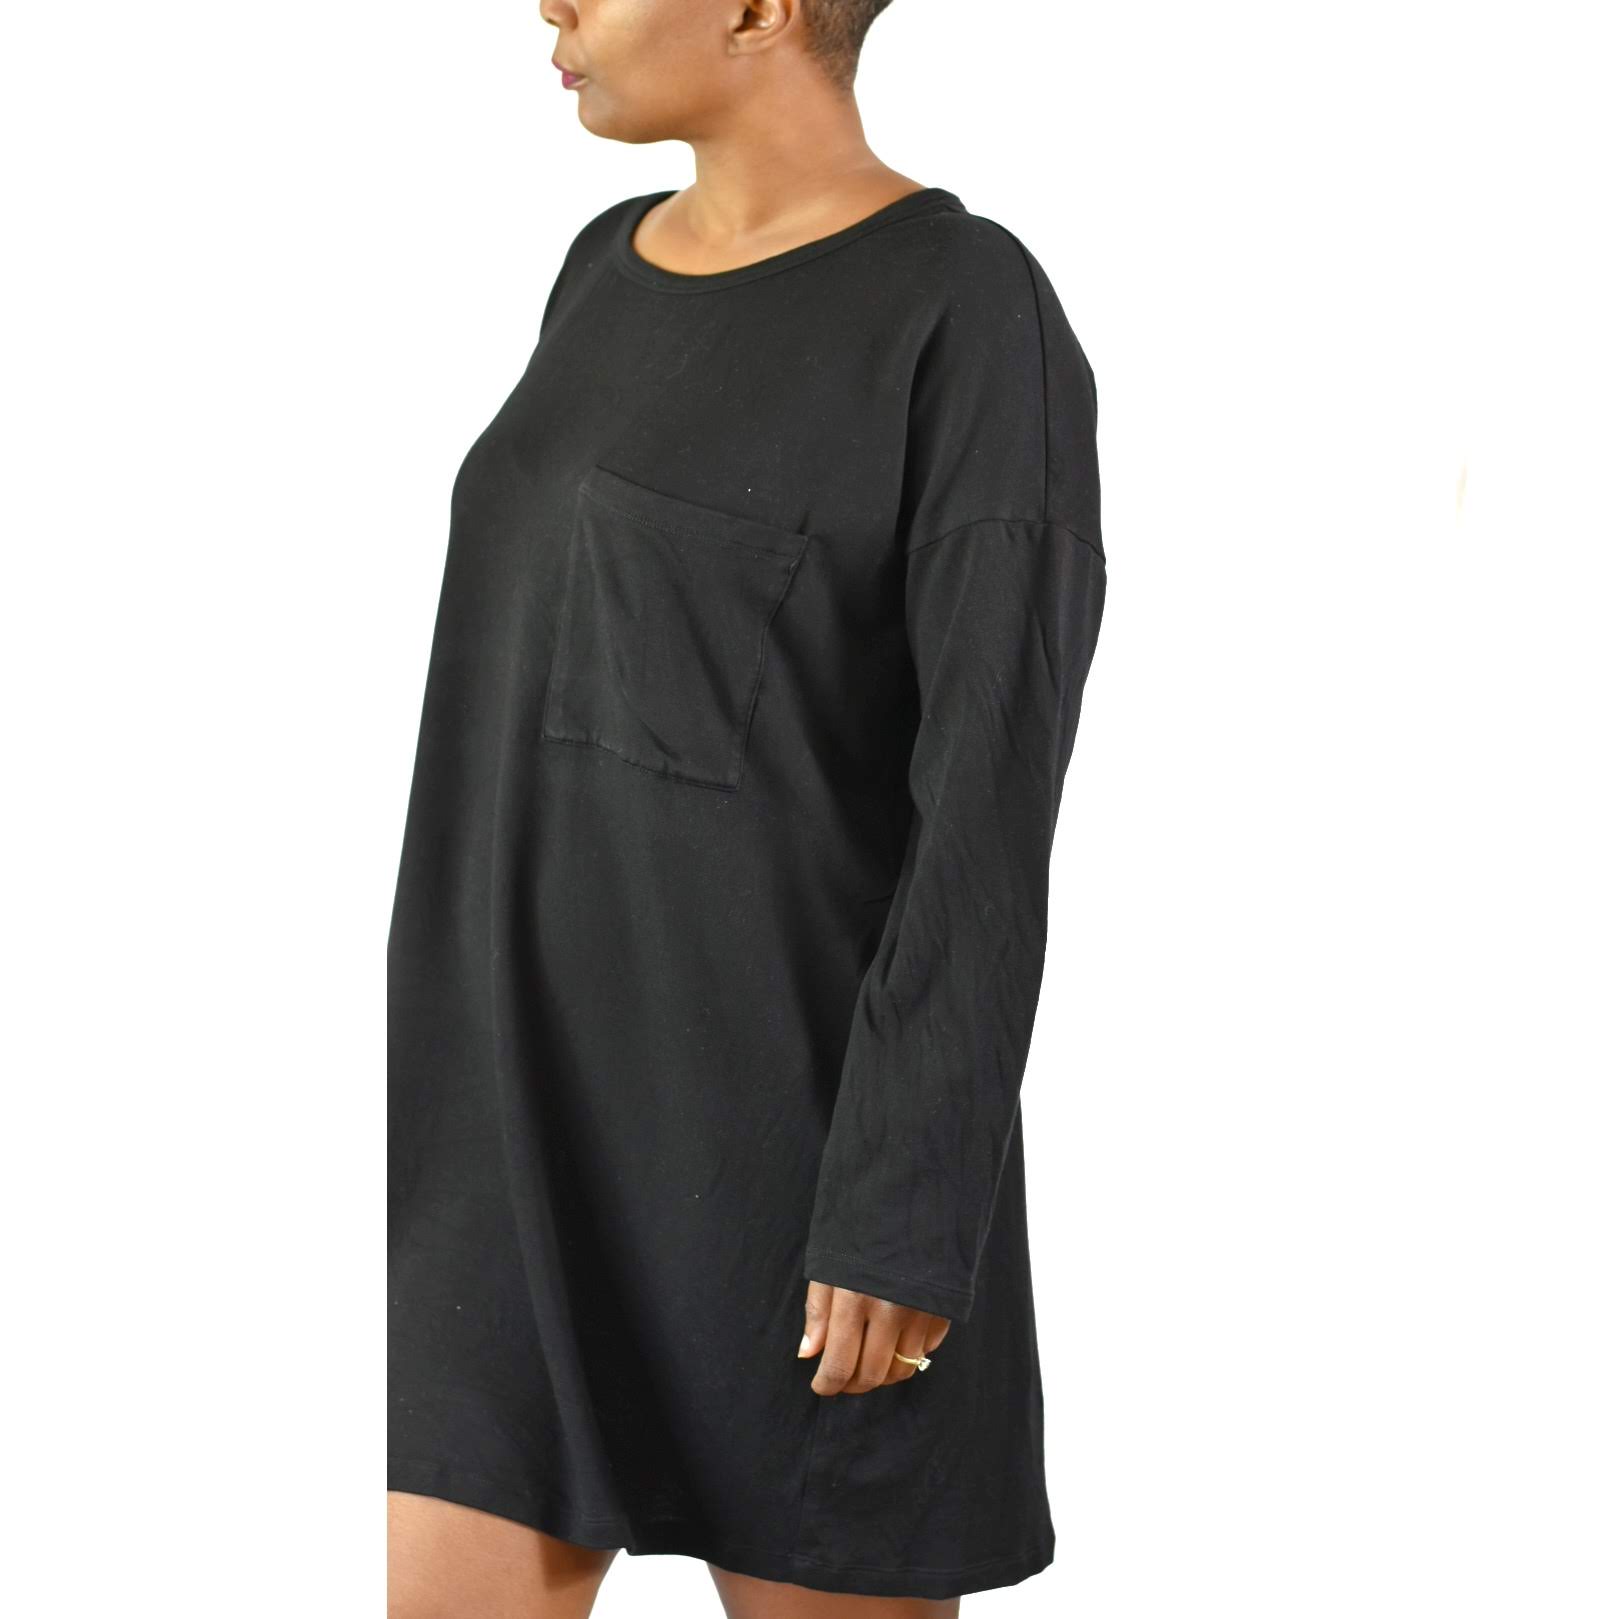 Eileen Fisher Tencel Fleece Tunic Top Size Large